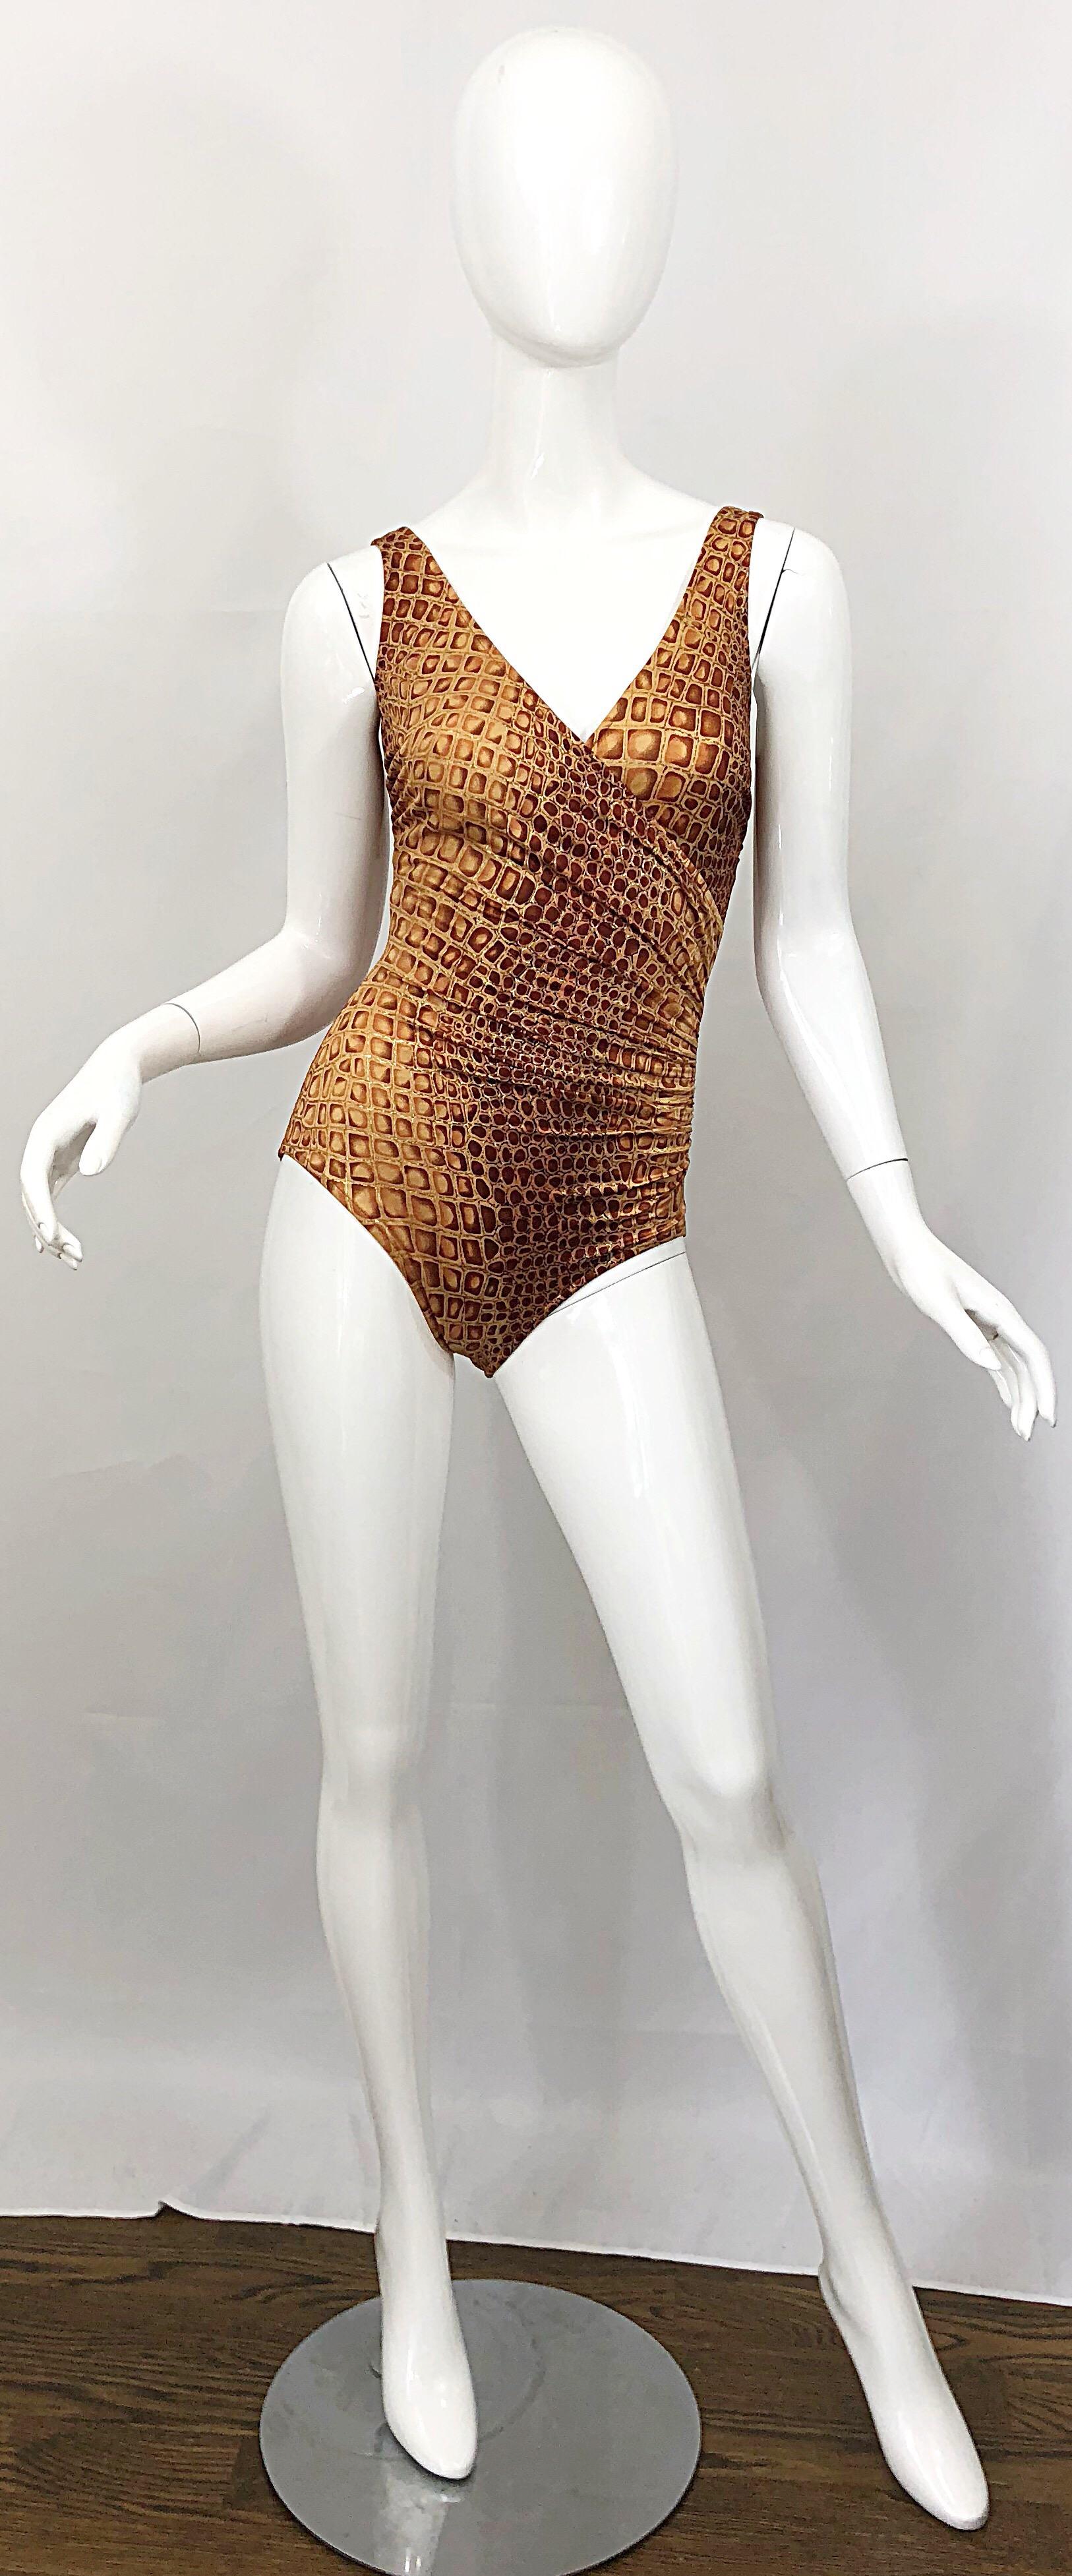 Neu mit Tags (NWT) Vintage 90s BILL BLASS ein Stück Badeanzug oder Bodysuit! Der schicke Alligator-/Krokodilschnitt schmeichelt der Figur. Brauntöne, Rost und ein gedämpftes Gold. Ein sehr schlank machender Anzug, der sich hervorragend für den